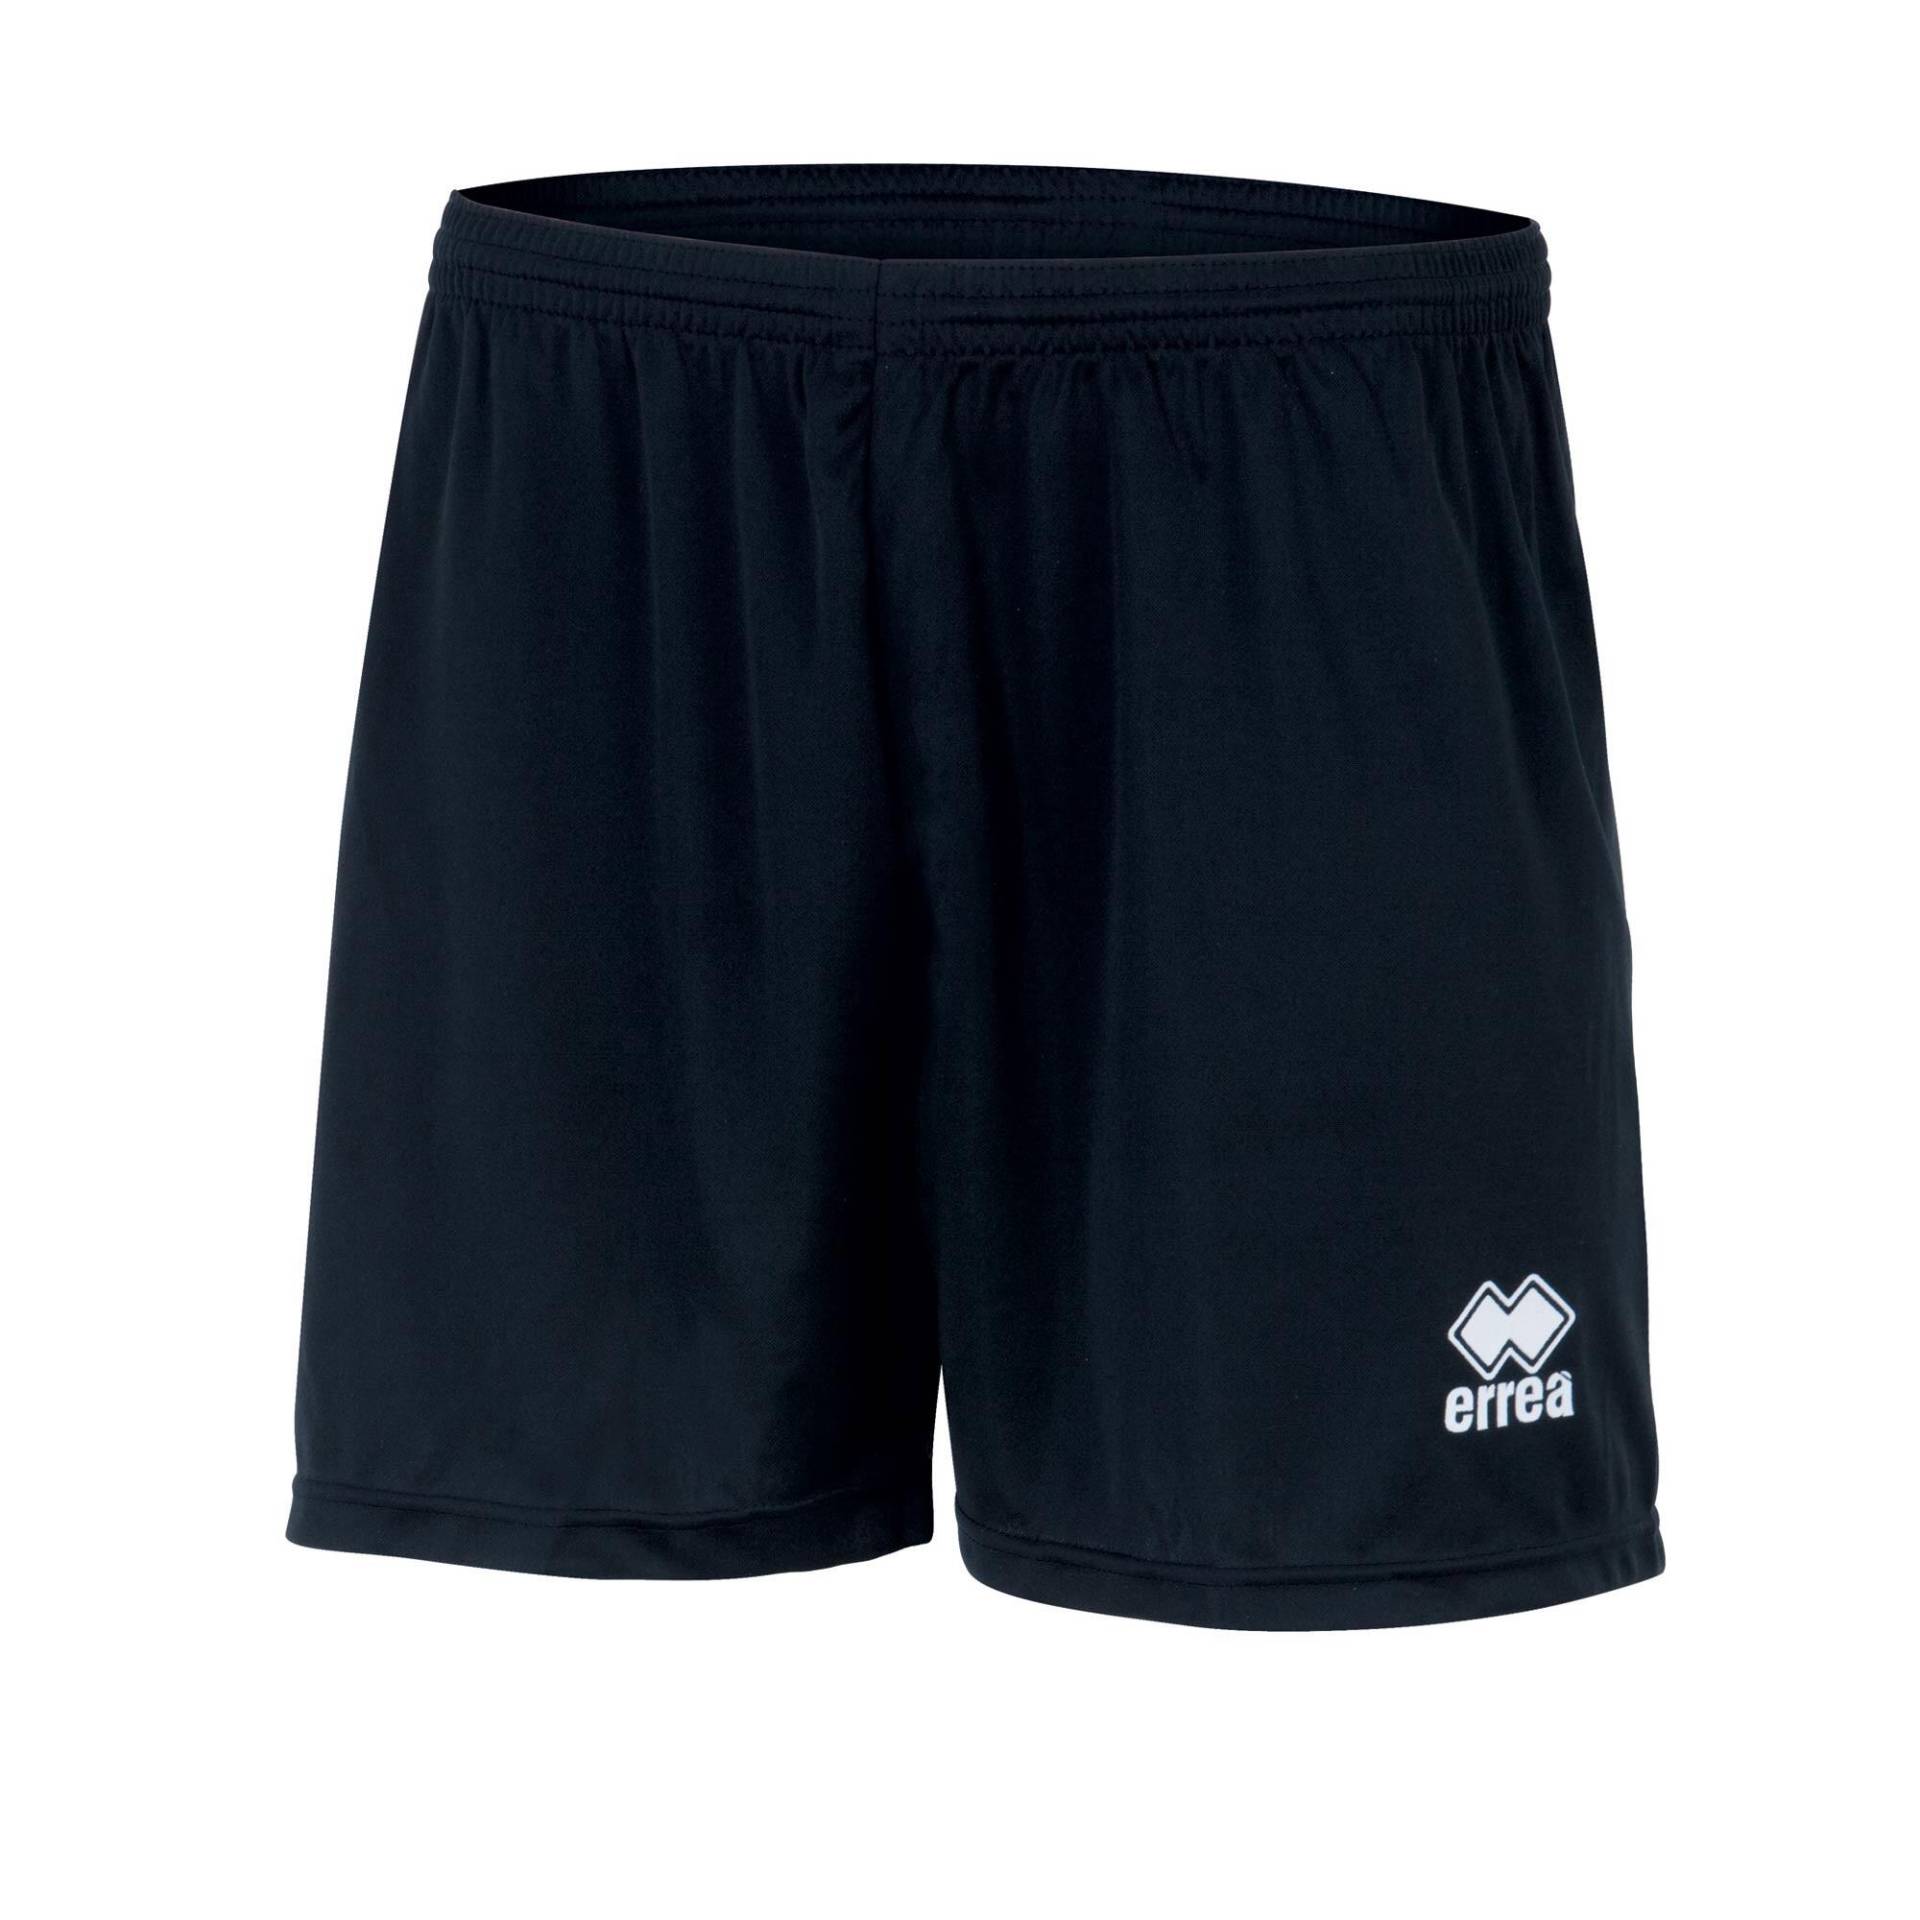 Damen/Herren Volleyball Shorts - ERREA New Skin blau von ERREA